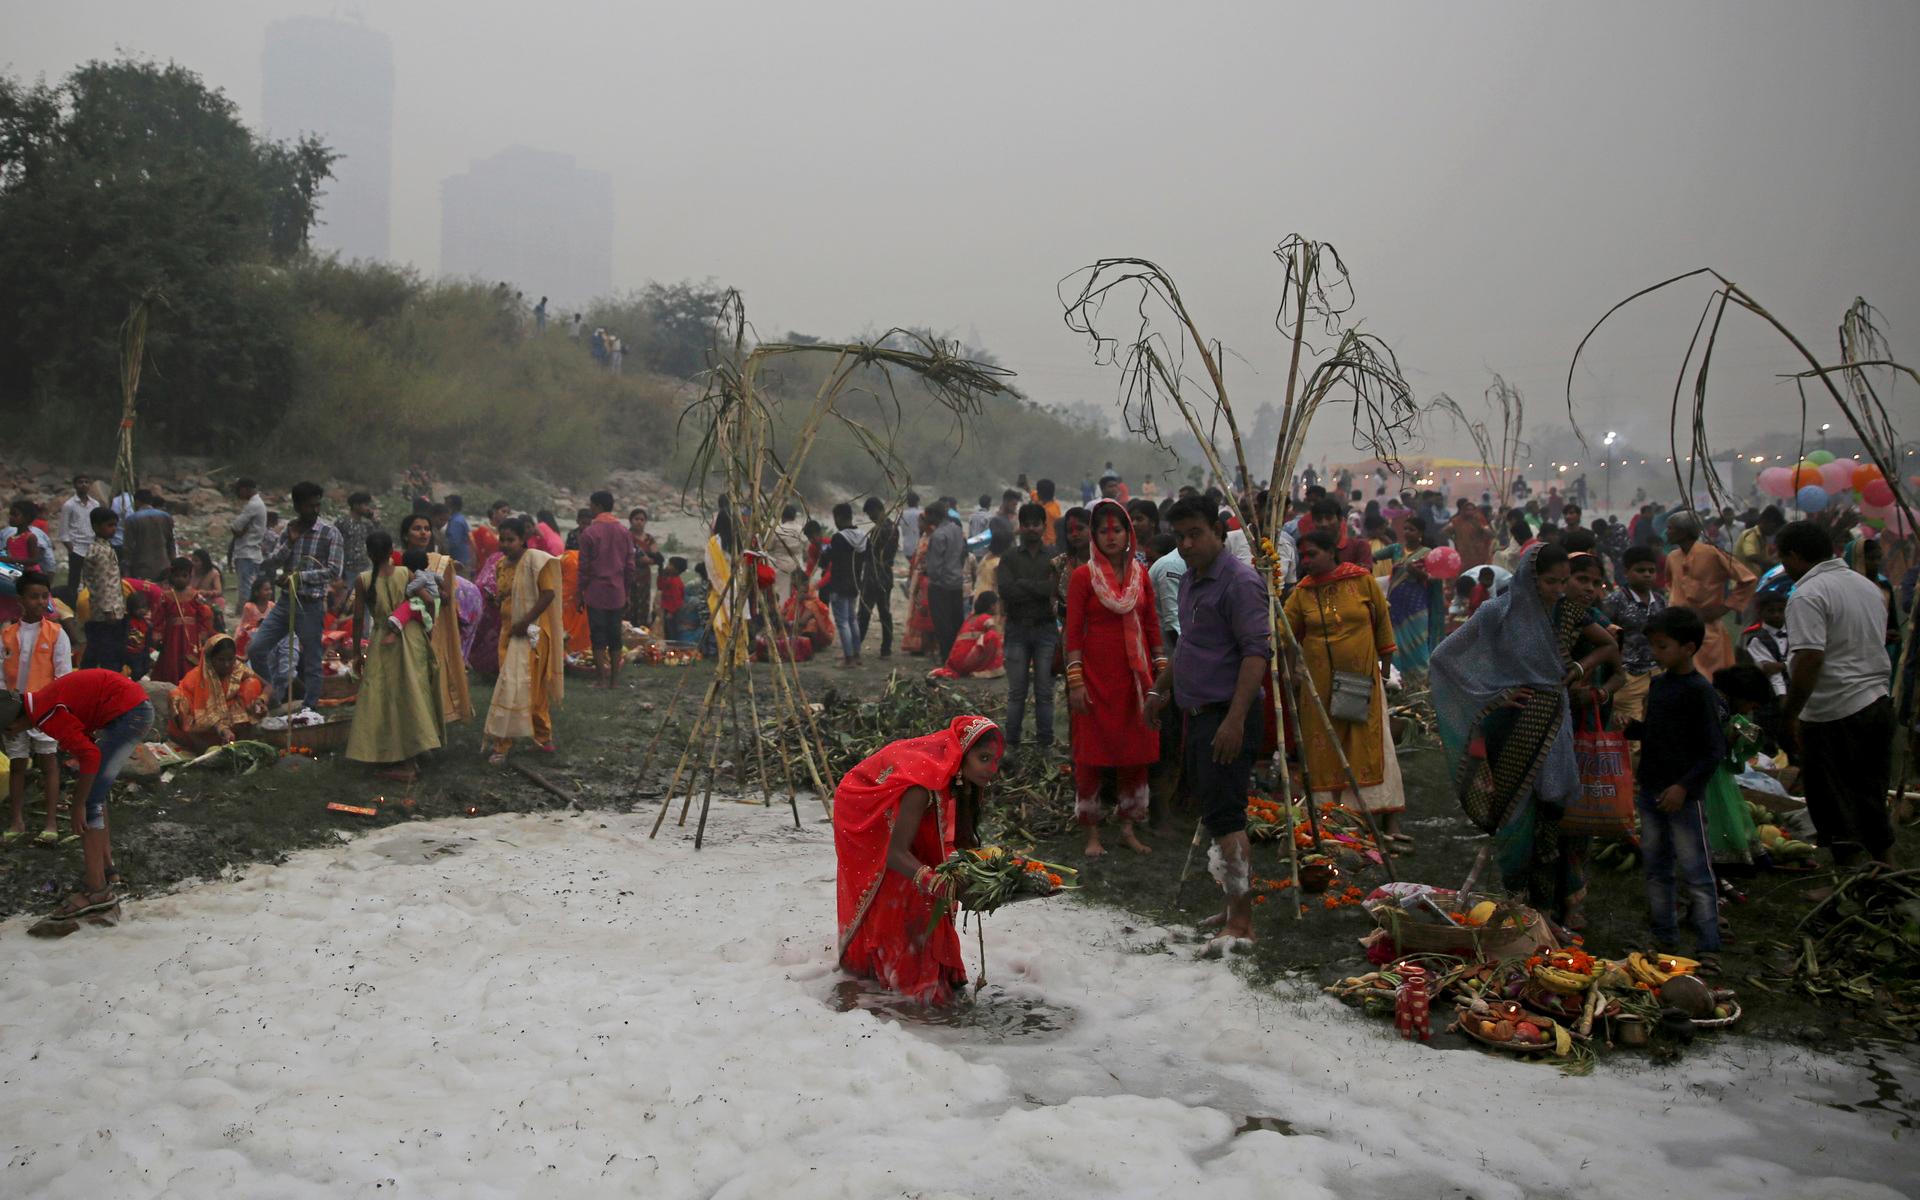 Tusentals hinduer tar sig till floden för att fira högtiden Chhath och badar då i det giftiga skummet.